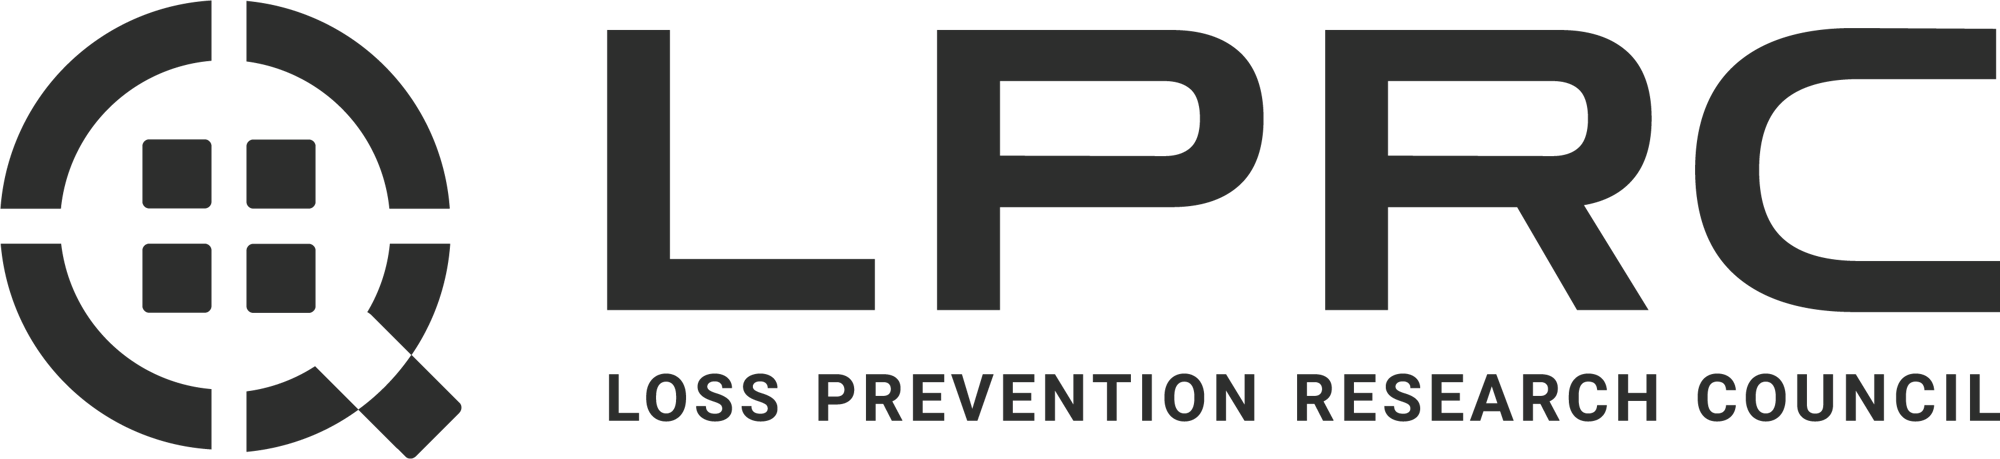 LPRC logo (2e2e2e)